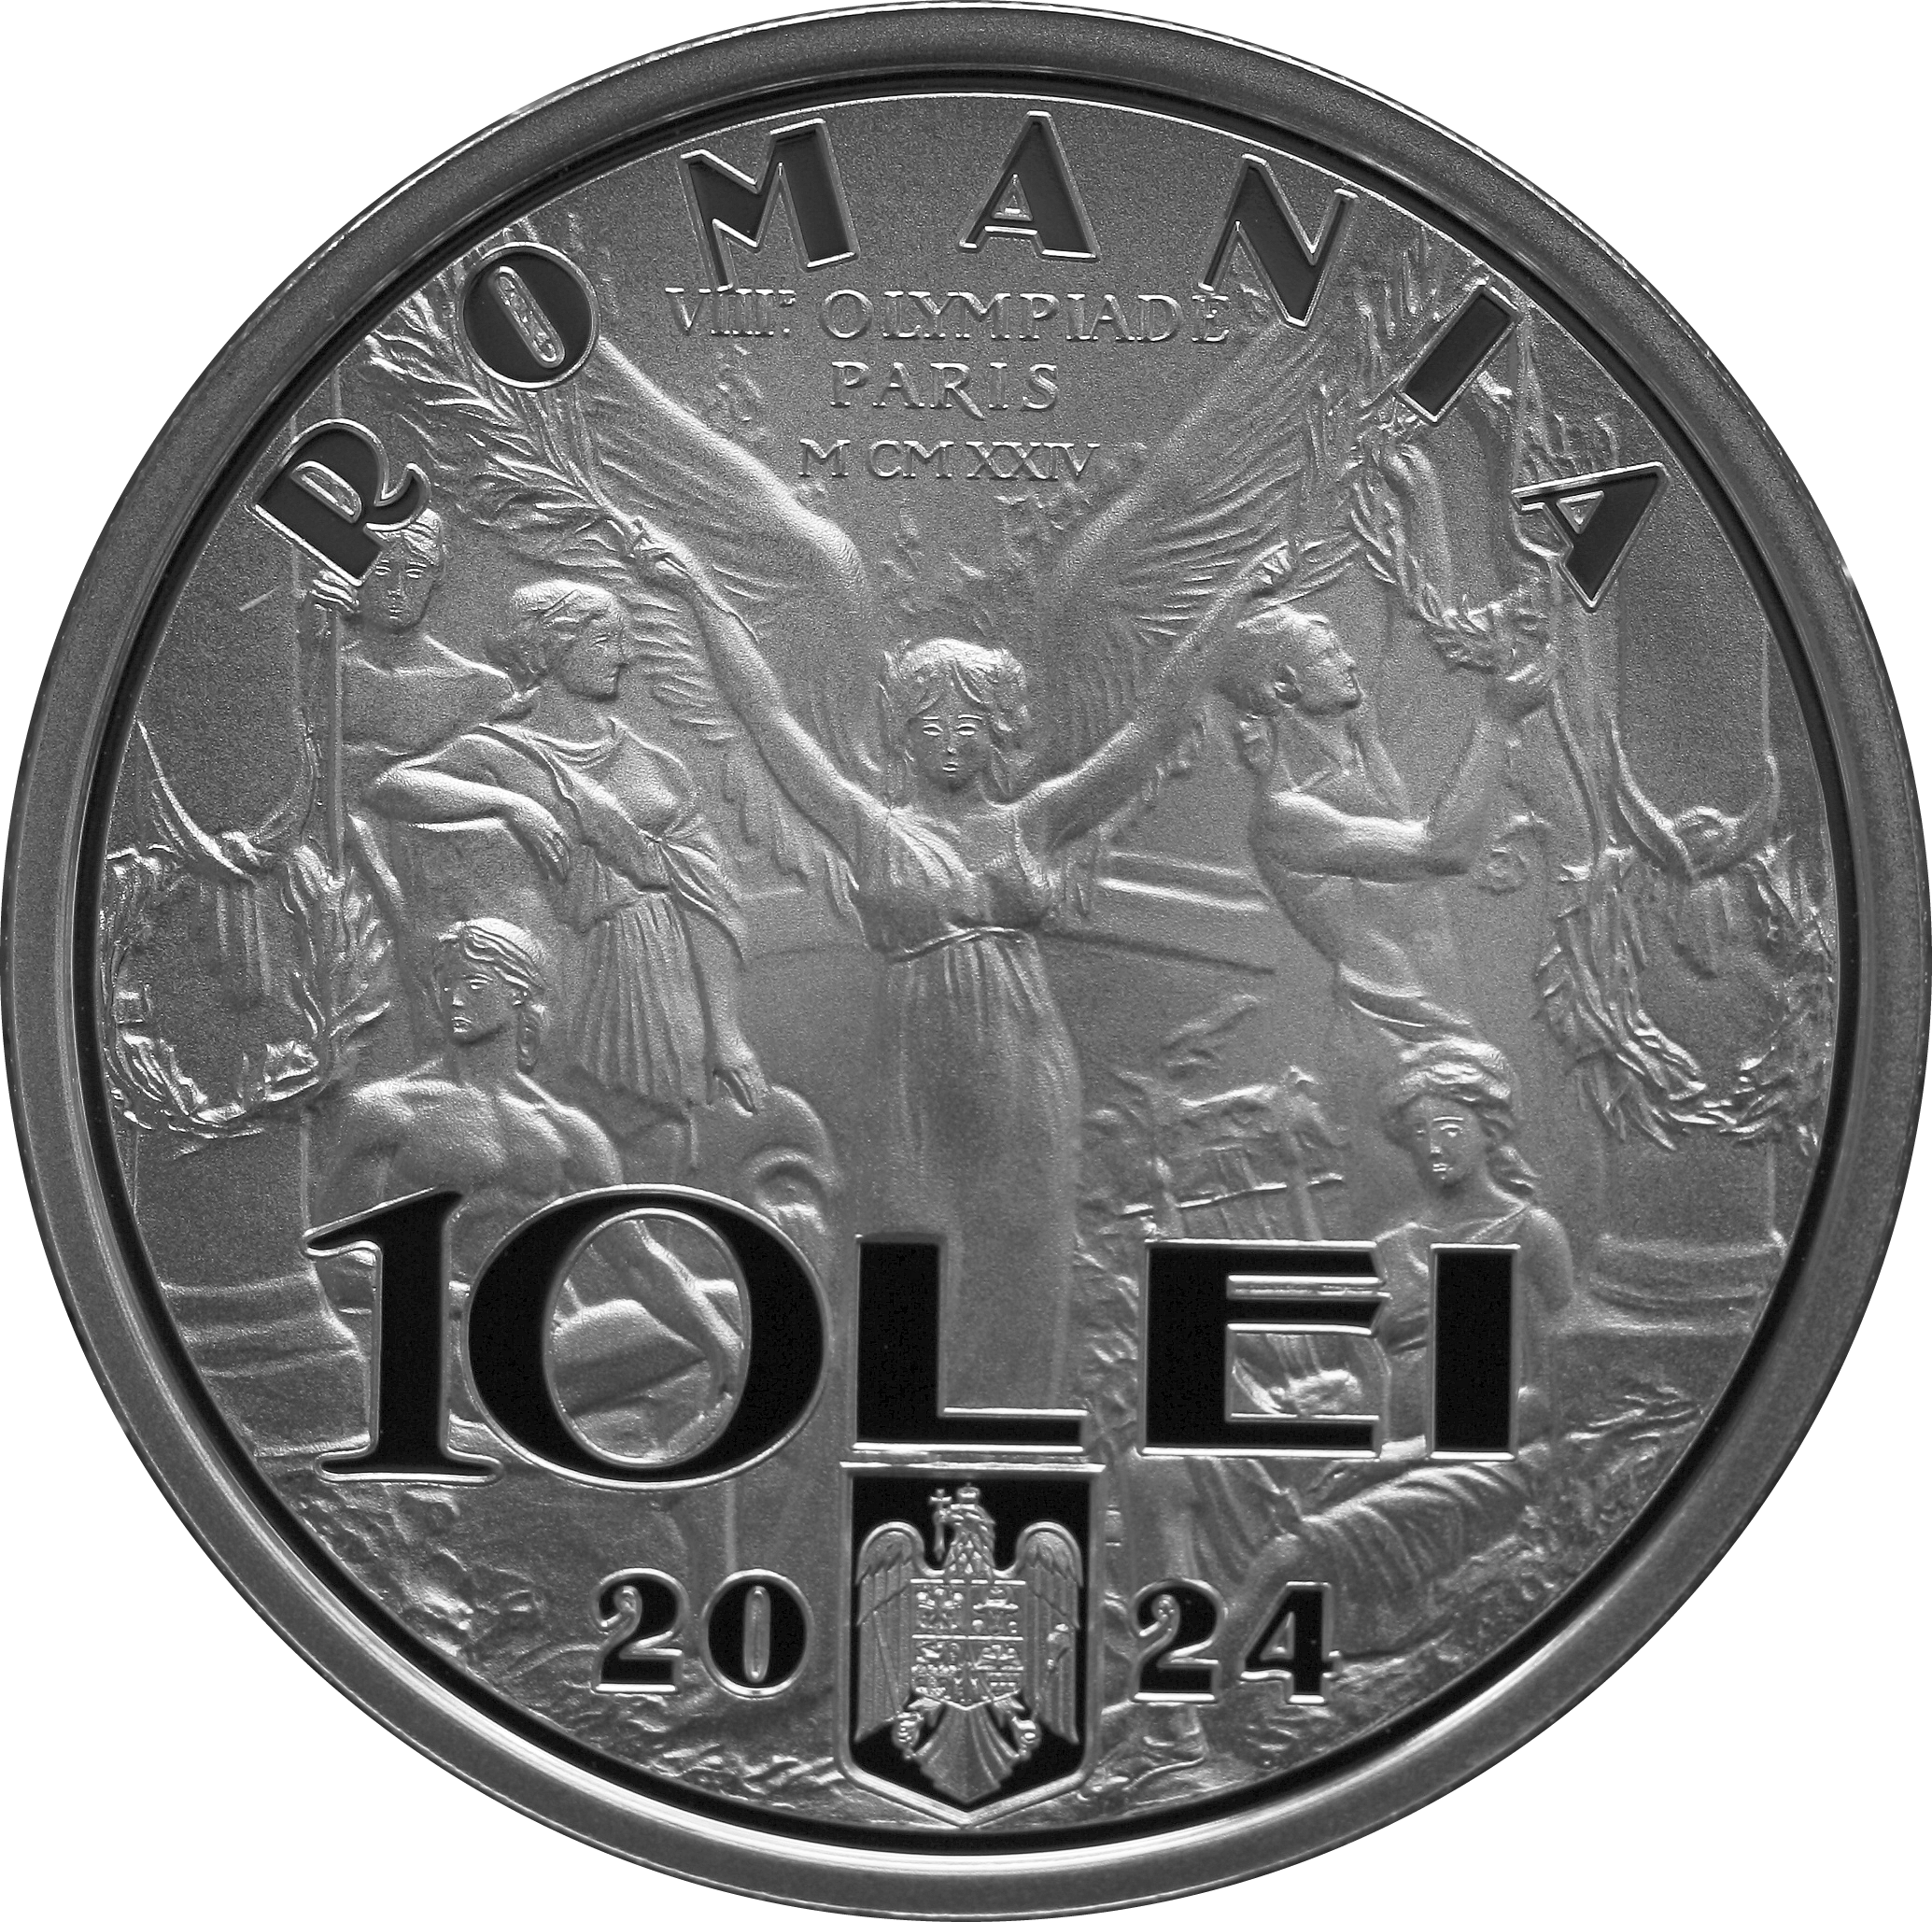 100 de ani de la cucerirea primei medalii olimpice a României! BNR lansează o monedă din argint (FOTO)